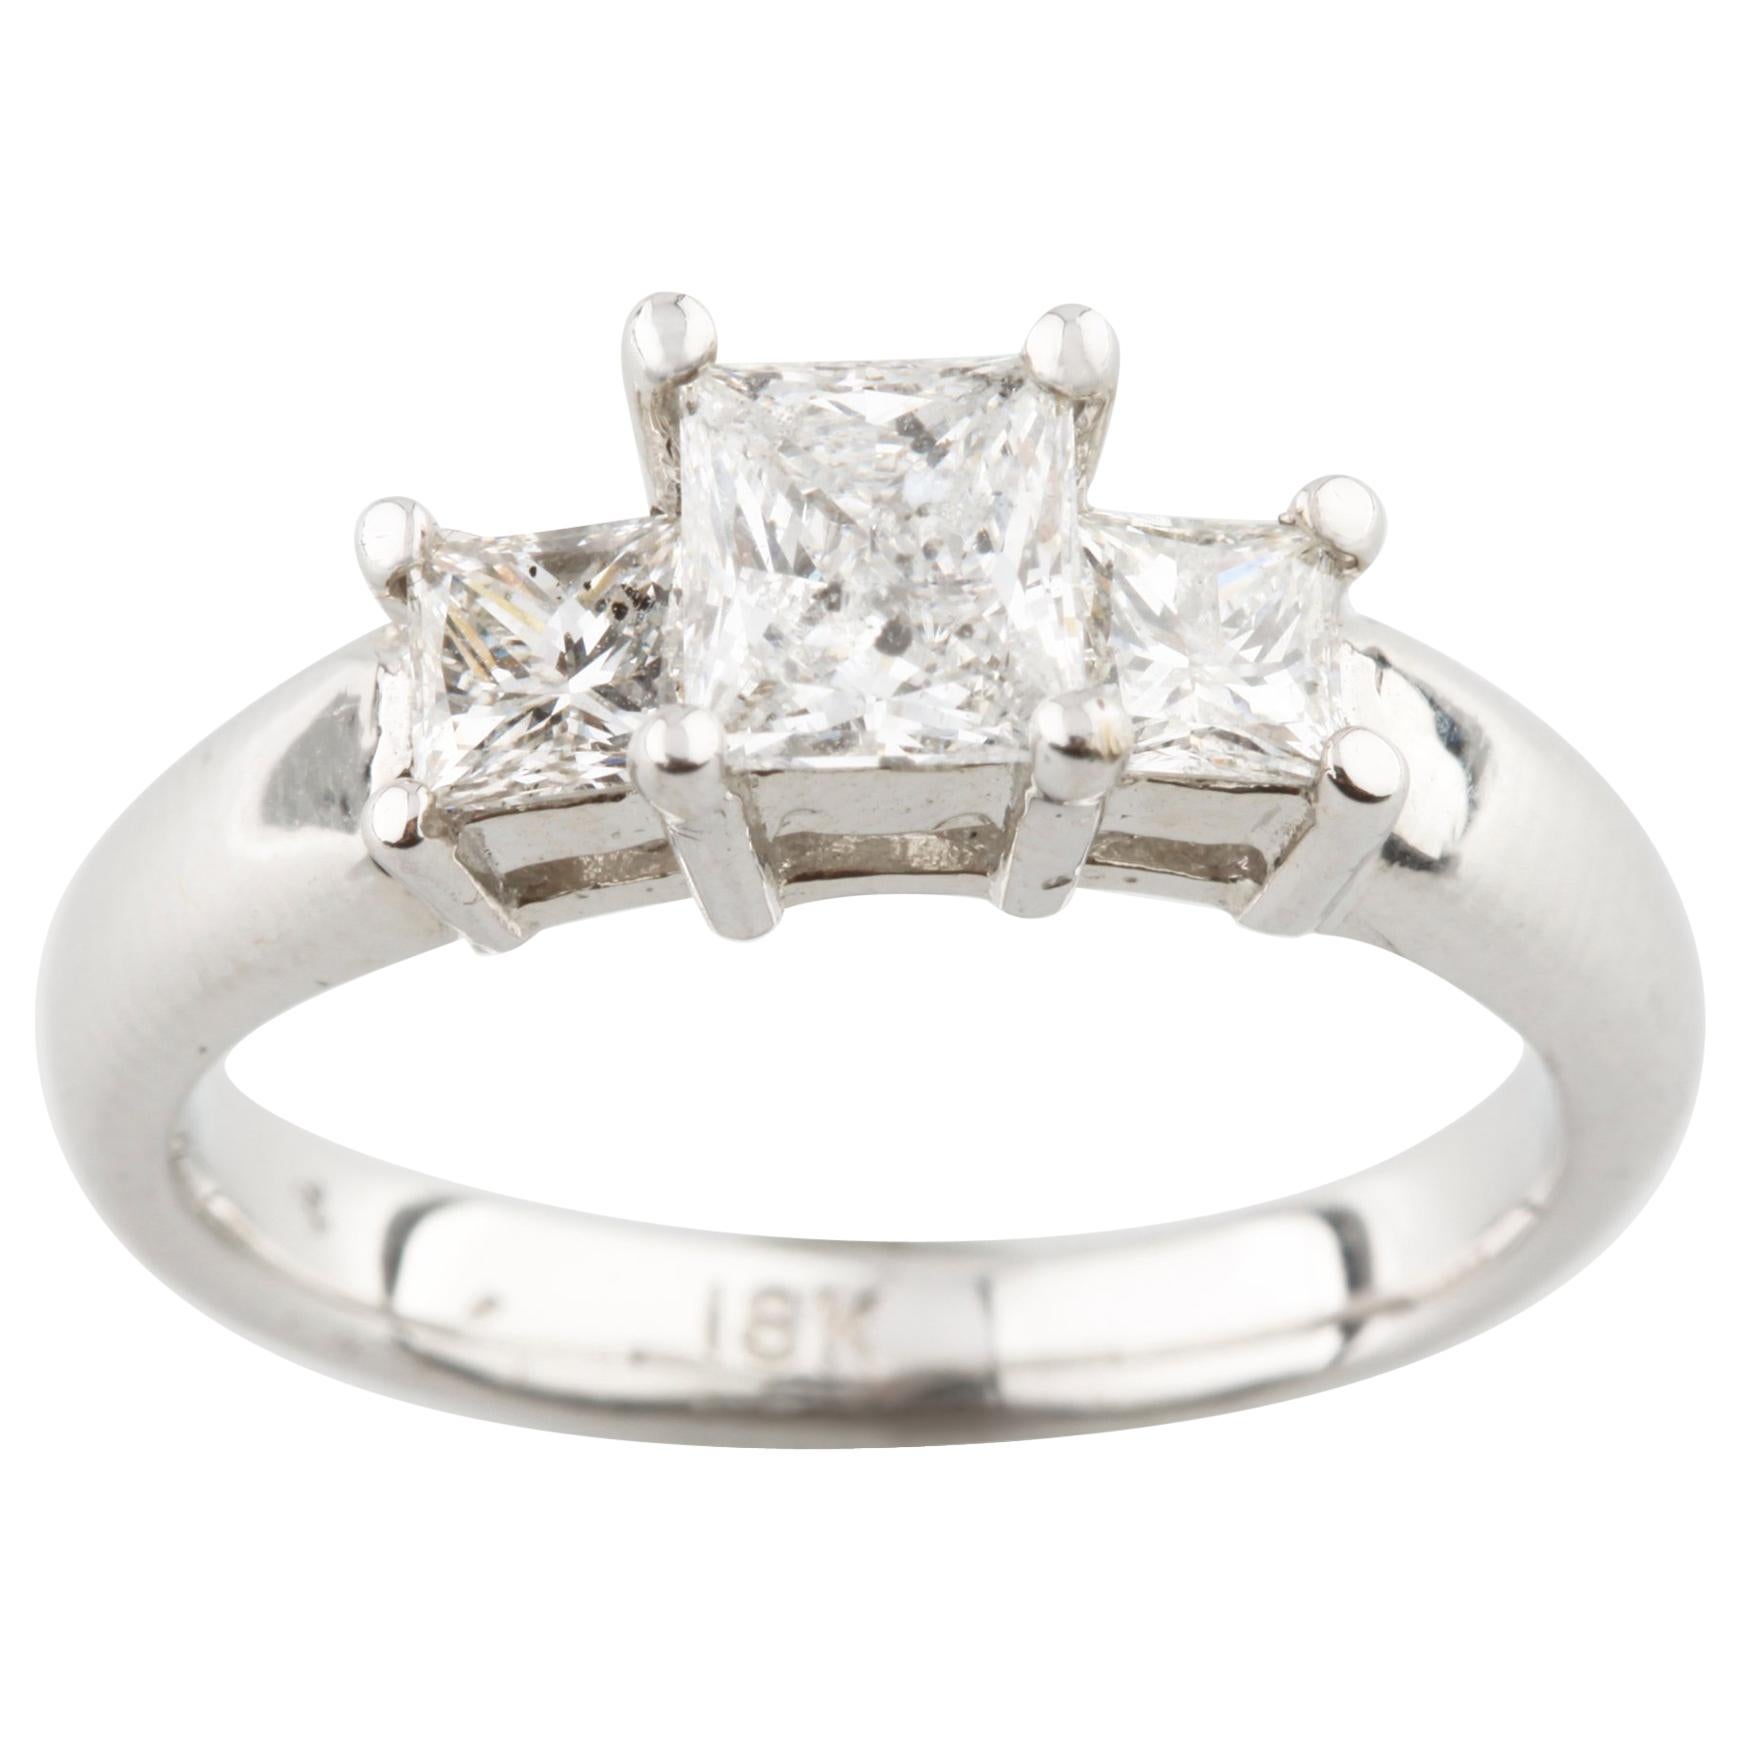 1.26 Carat Princess Cut Diamond 3-Stone 18 Karat White Gold Engagement Ring